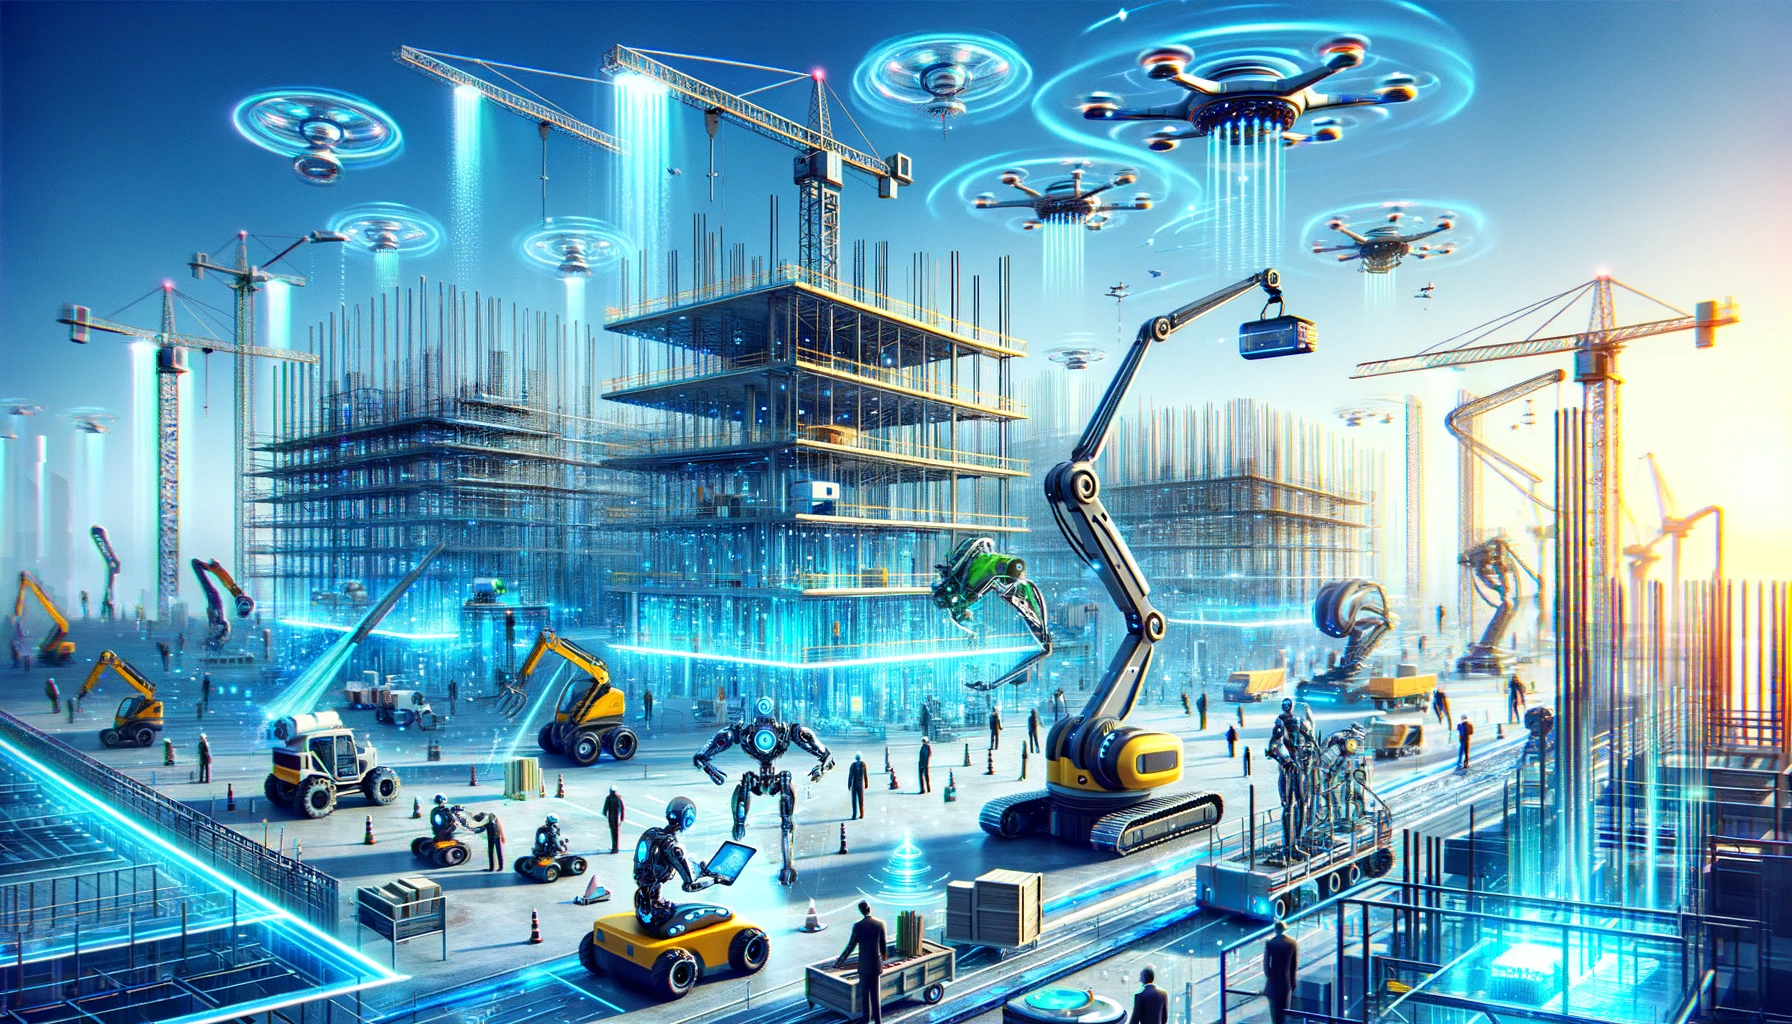 Revolution am Bau: Wie KI und Robotik die Zukunft gestalten